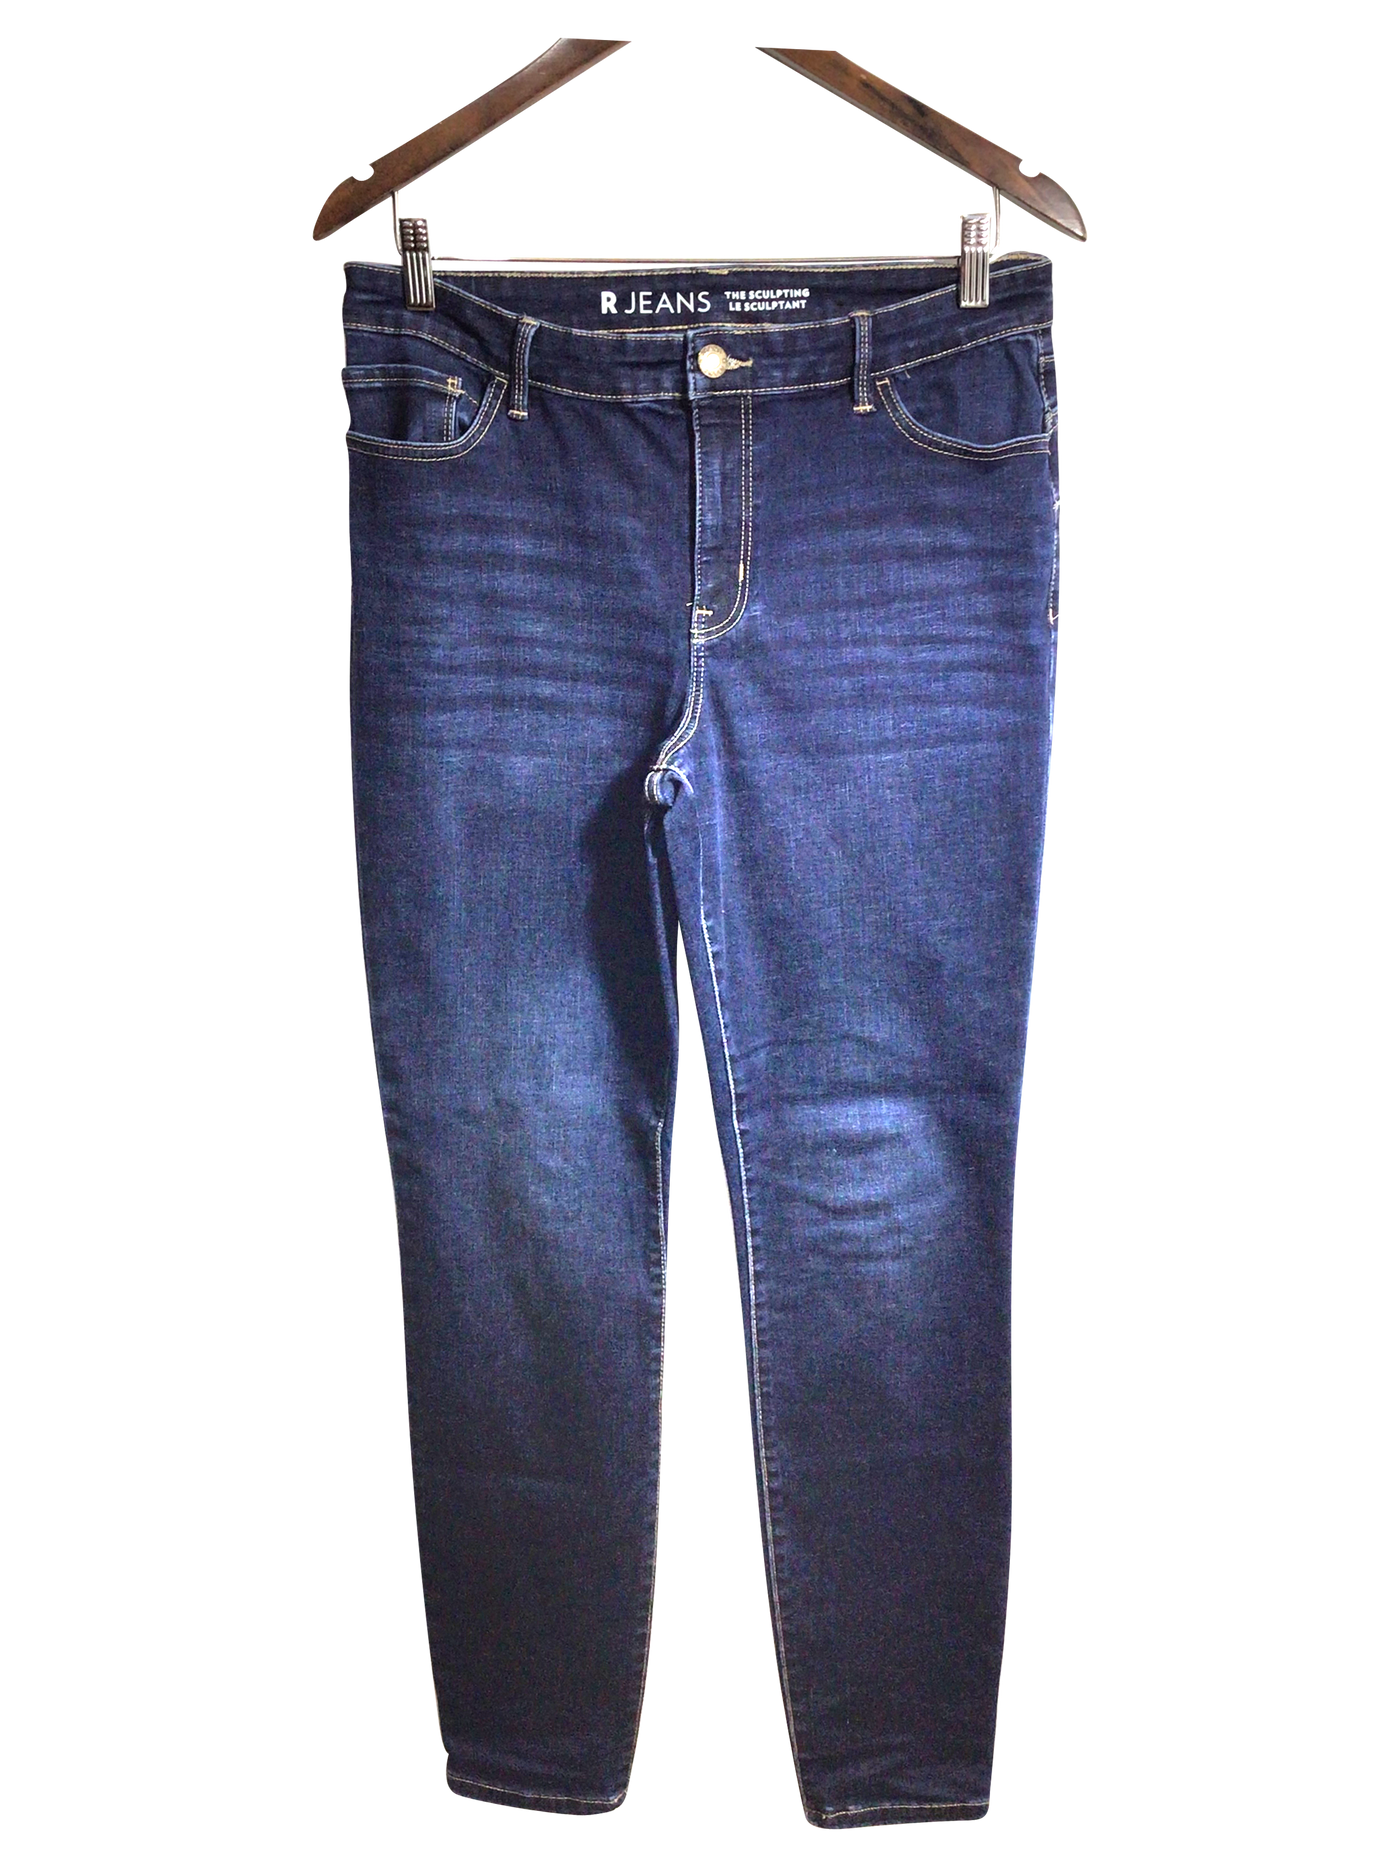 R JEANS Women Straight-Legged Jeans Regular fit in Blue - Size 31 | 13.25 $ KOOP